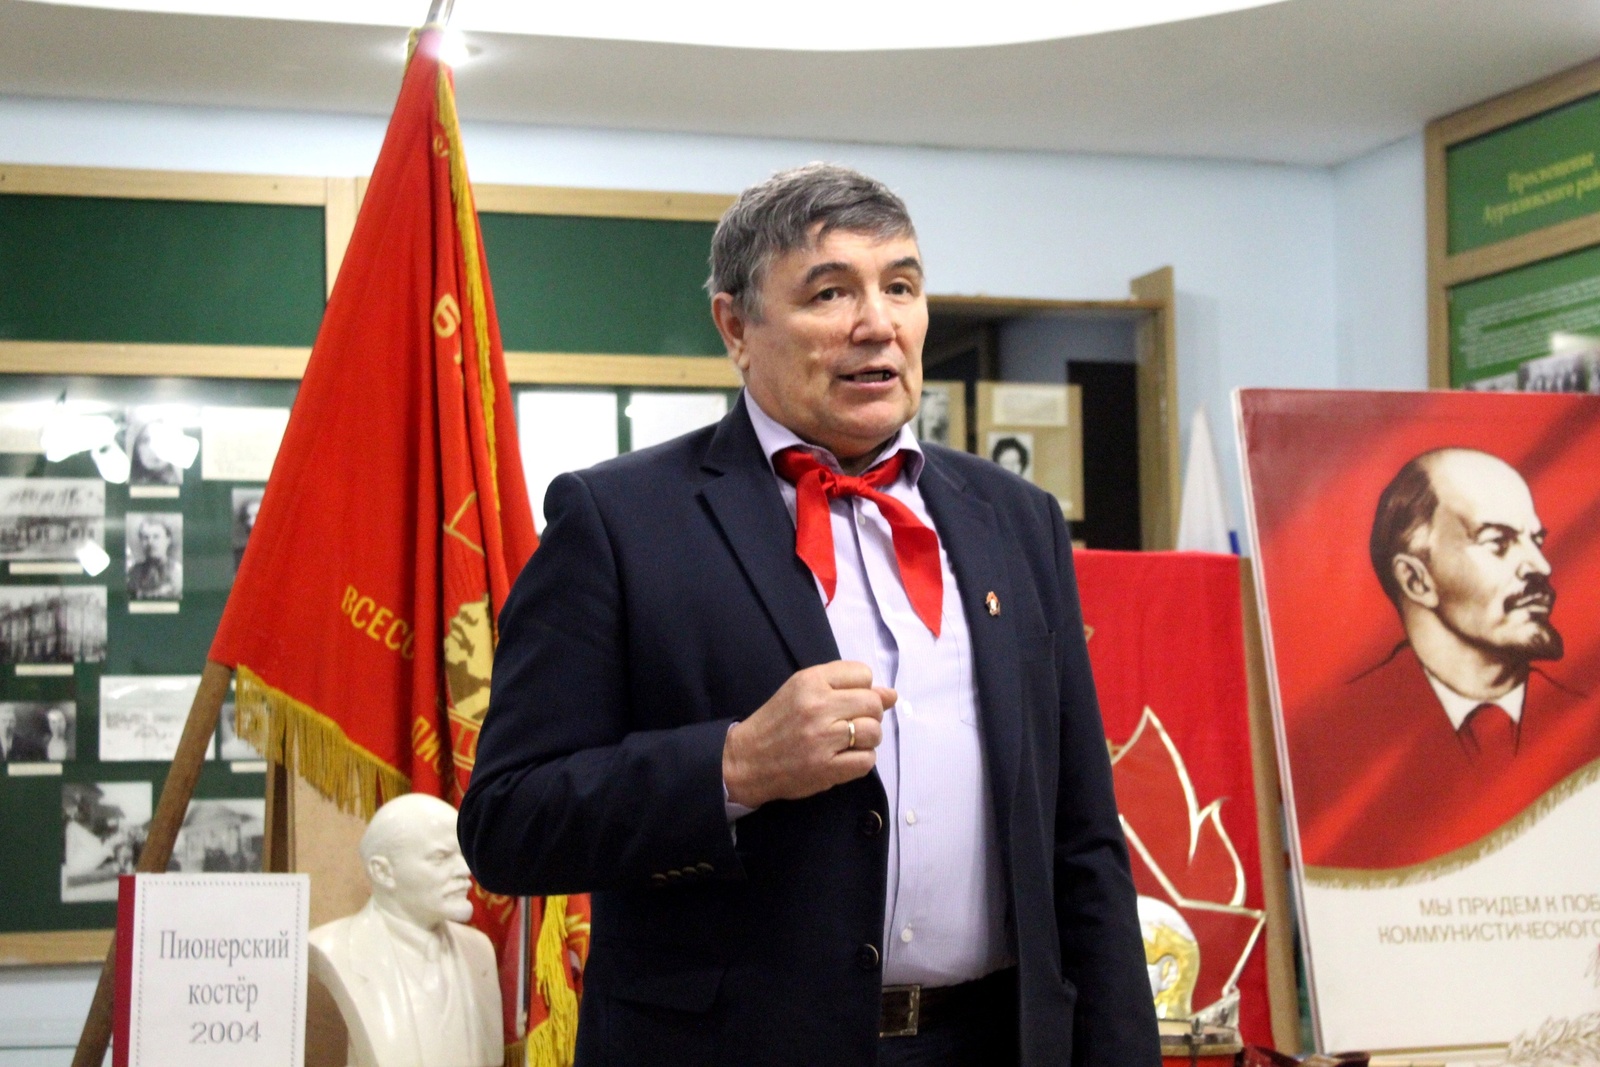 Отличник образования РФ из Аургазинского района Юрий Леонтьев отмечает юбилей